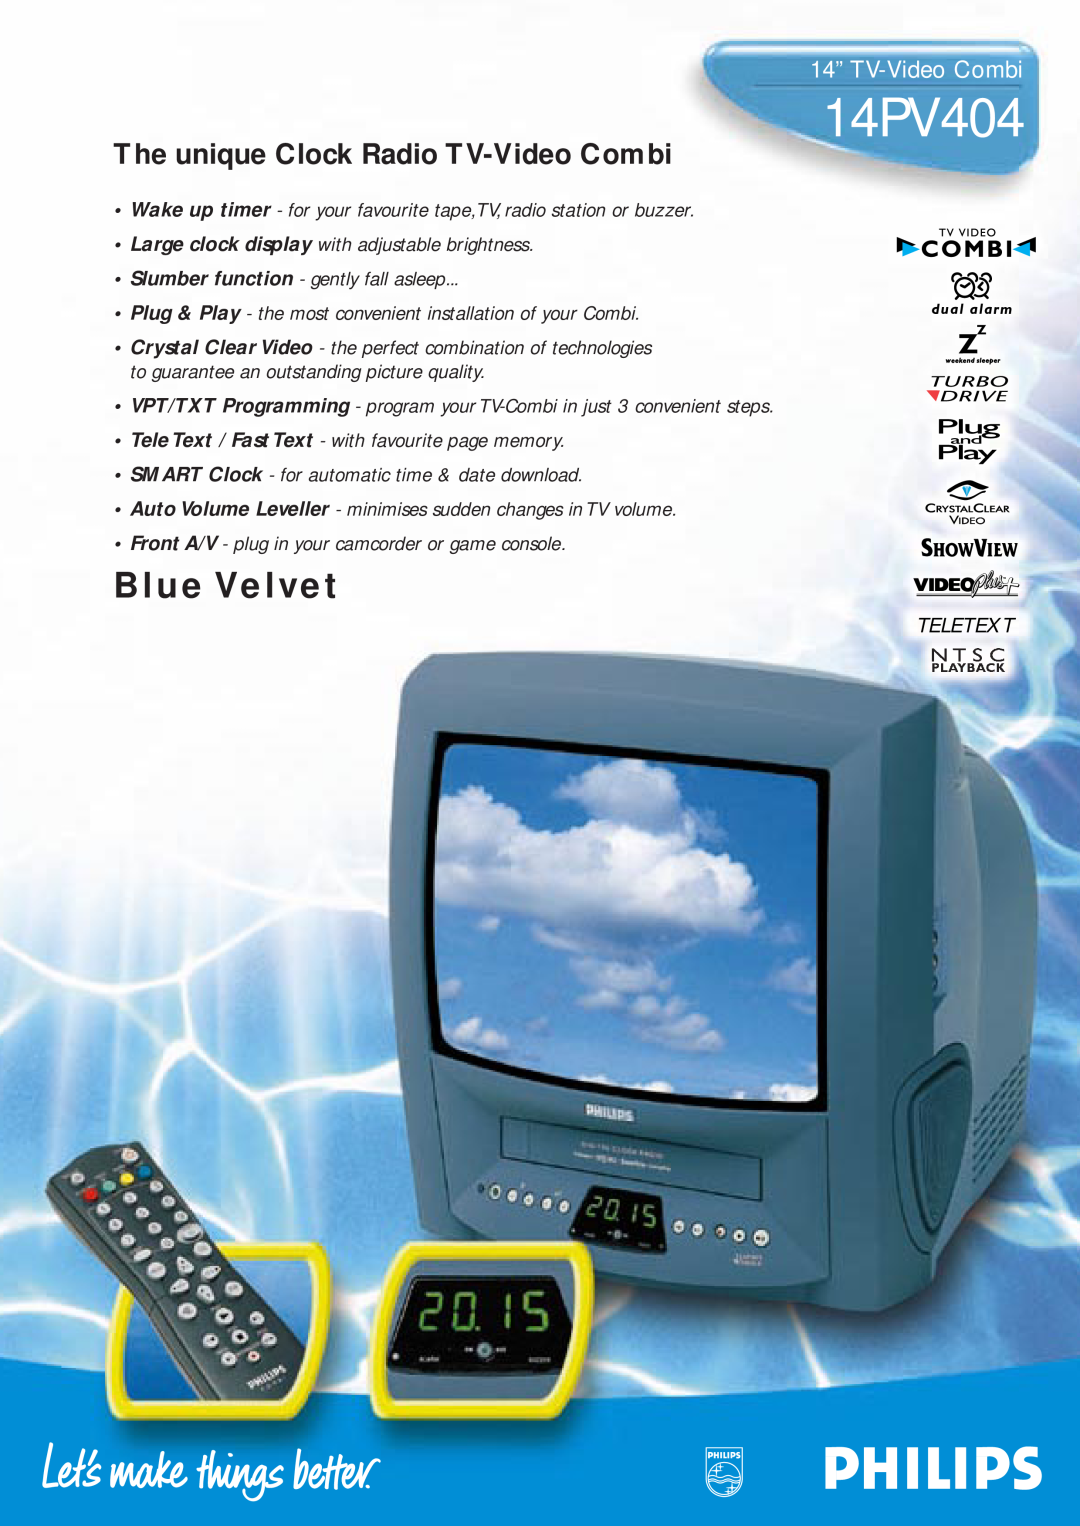 Philips 14PV404 manual 14” TV-Video Combi, Blue Velvet, The unique Clock Radio TV-Video Combi, Teletext 